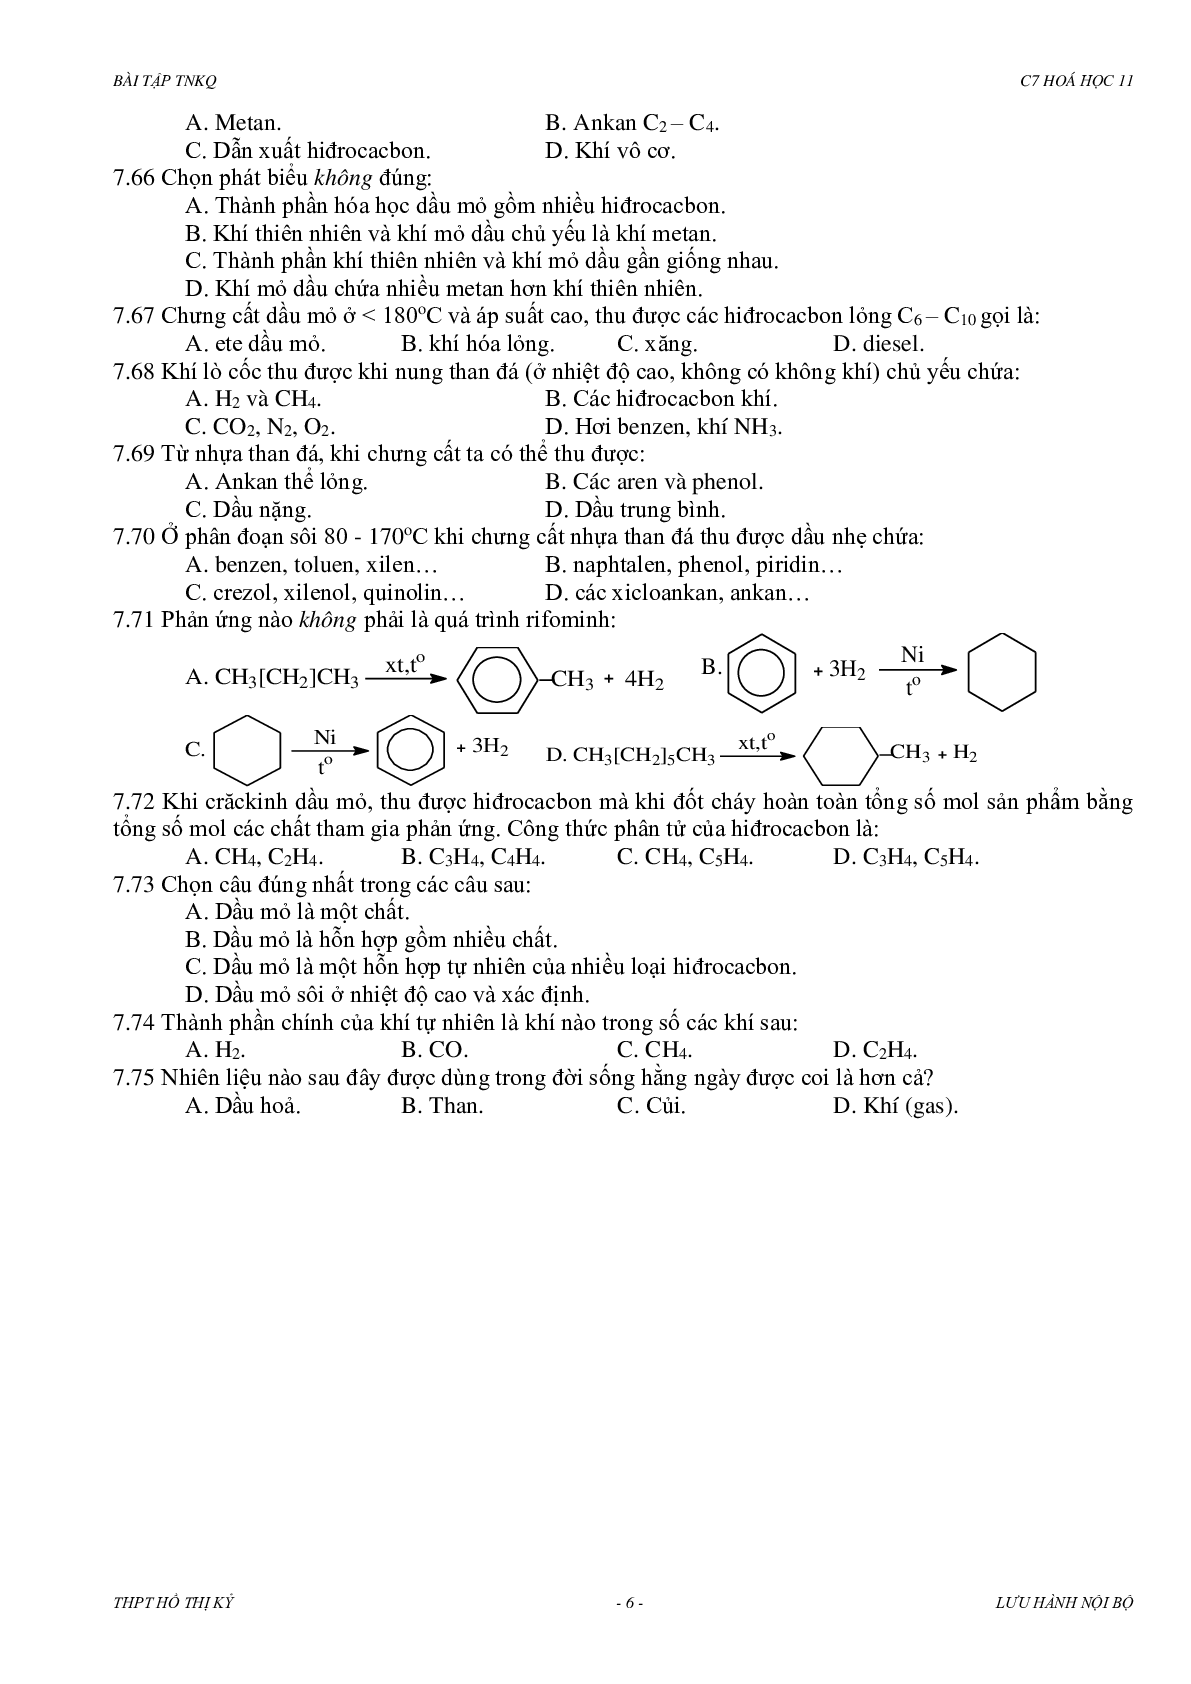 Bài tập về hidrocacbon thơm có đáp án, chọn lọc (trang 6)